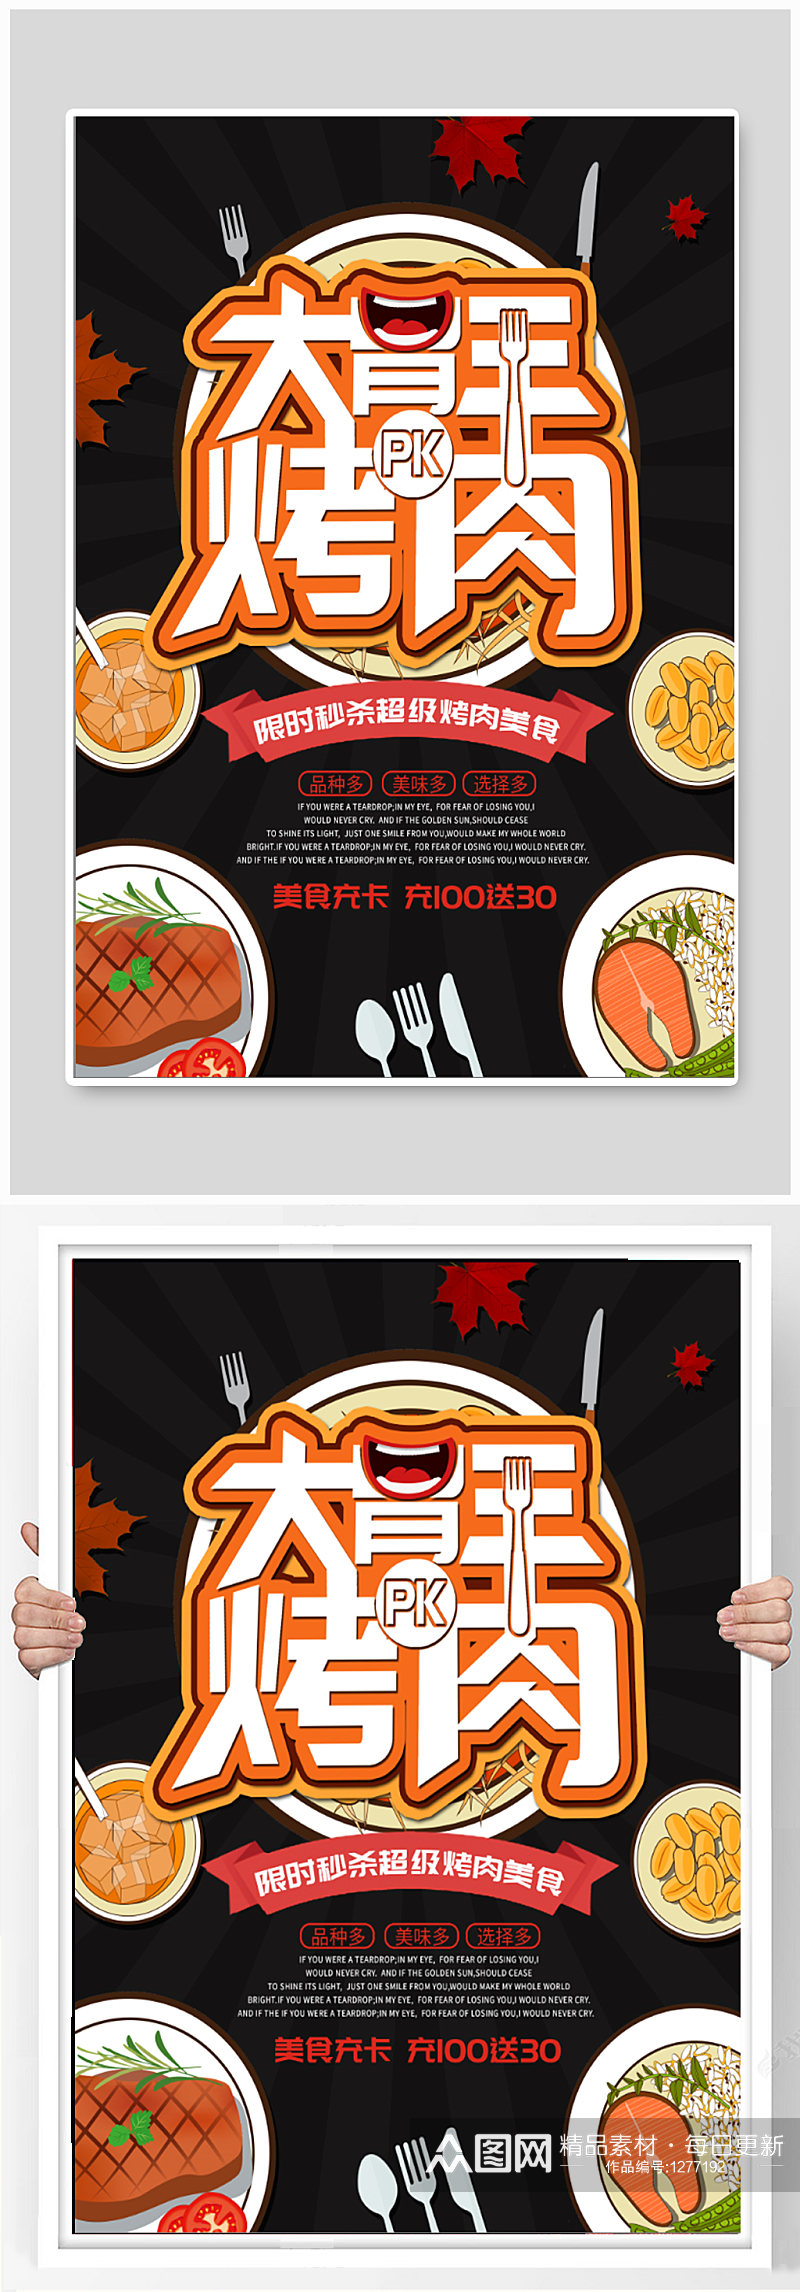 大胃王烤肉比赛宣传海报素材